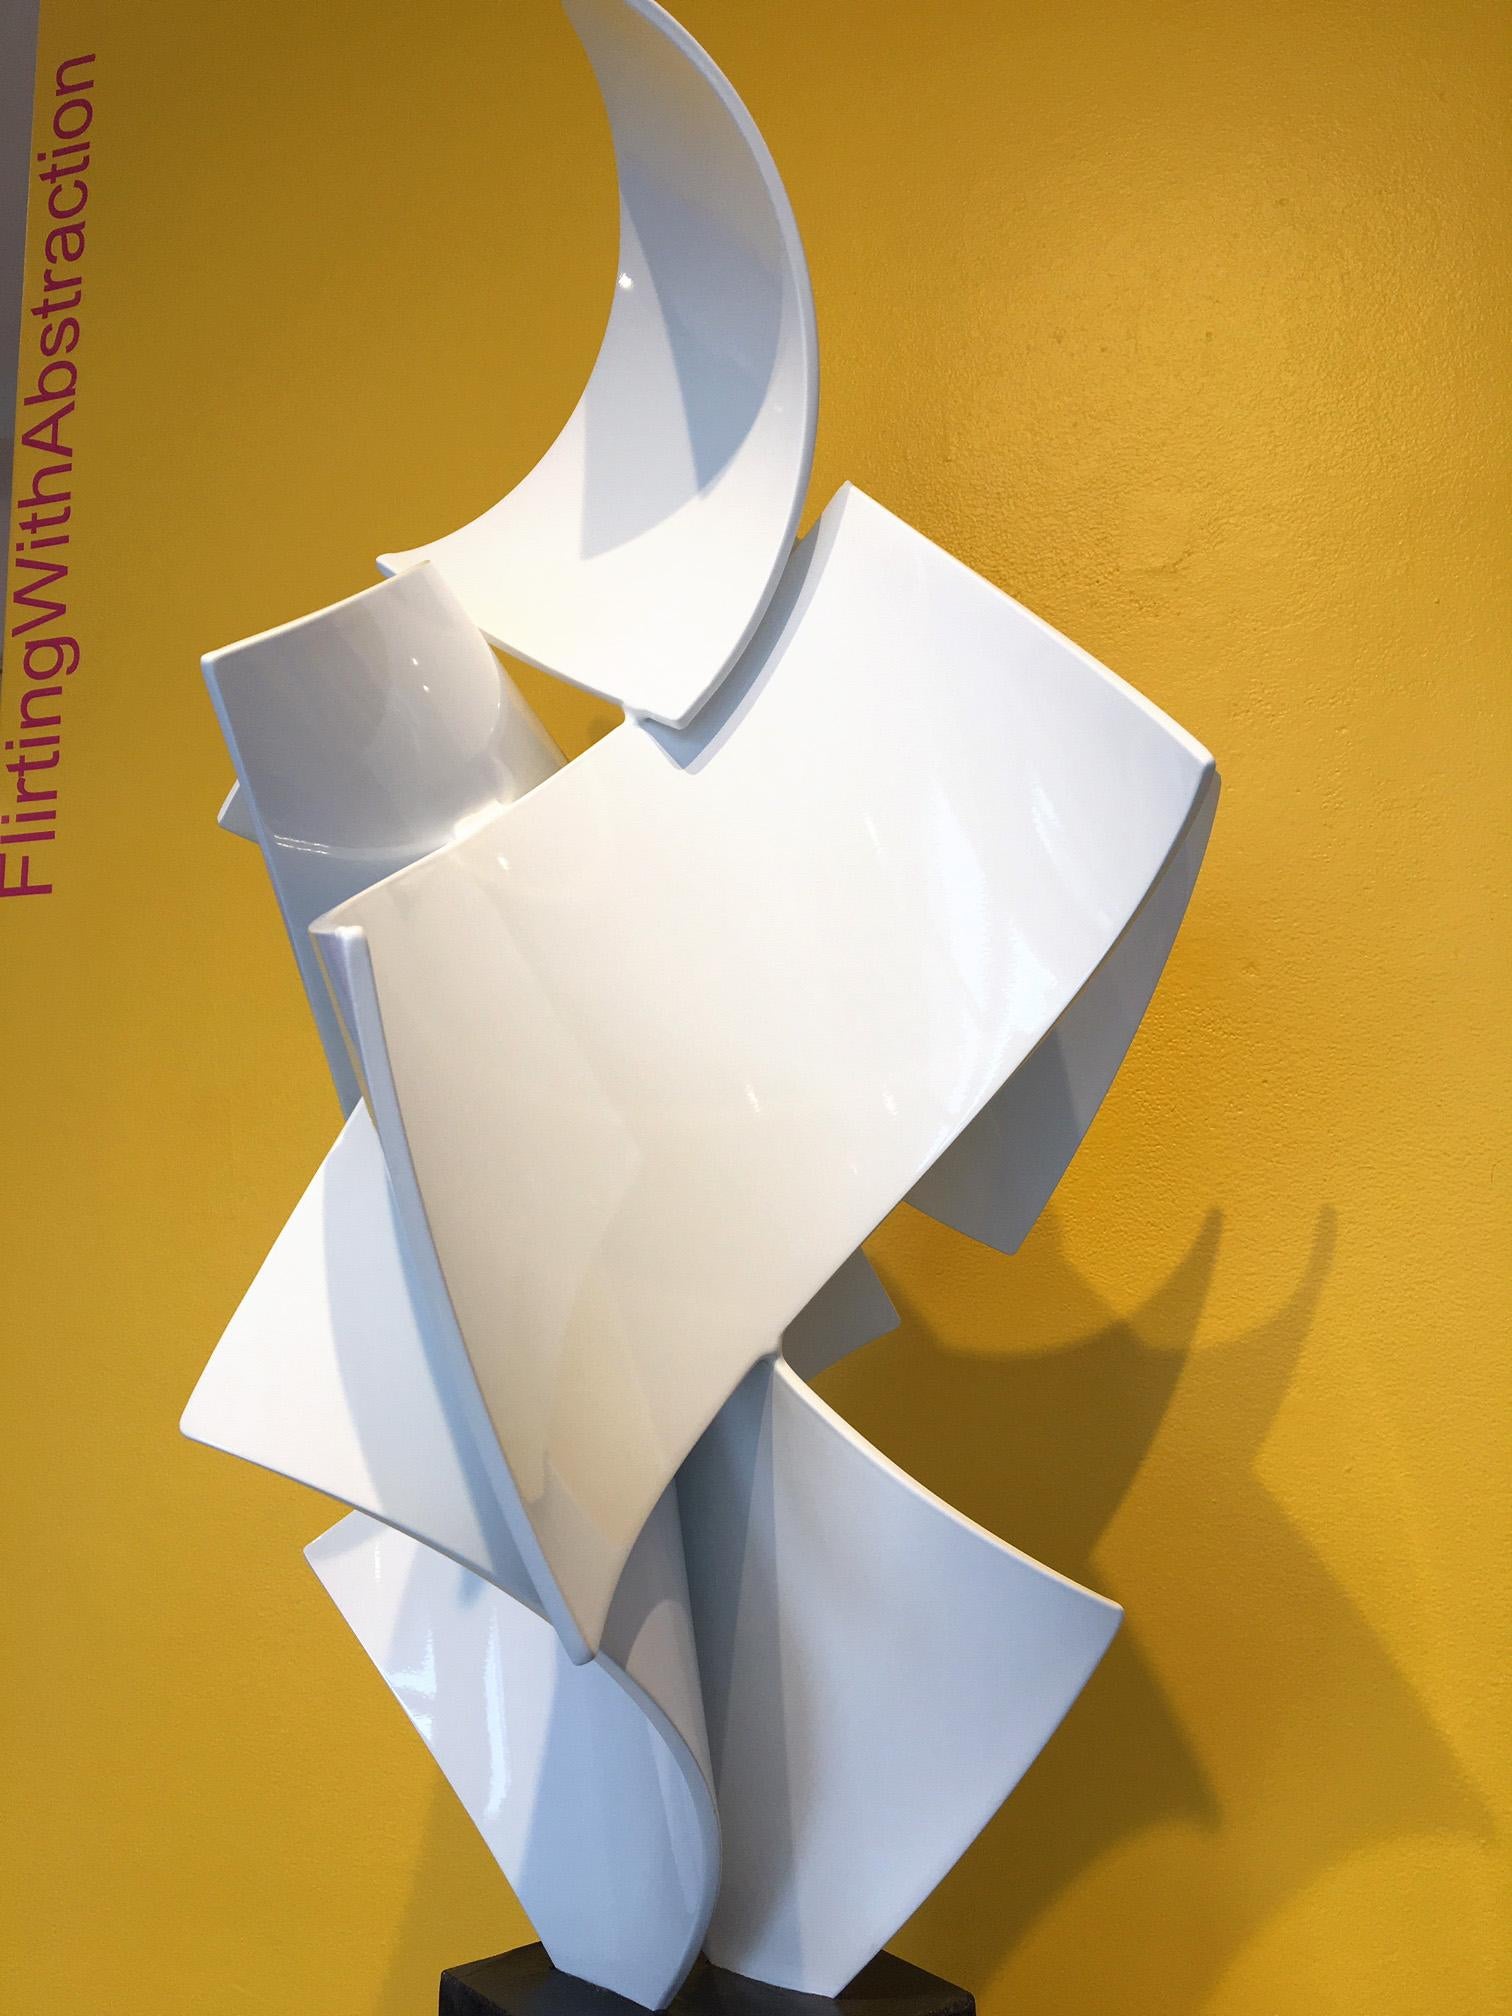 Big Top #15, Matt Devine (white freestanding sculpture, Indoors/Outdoors) 2